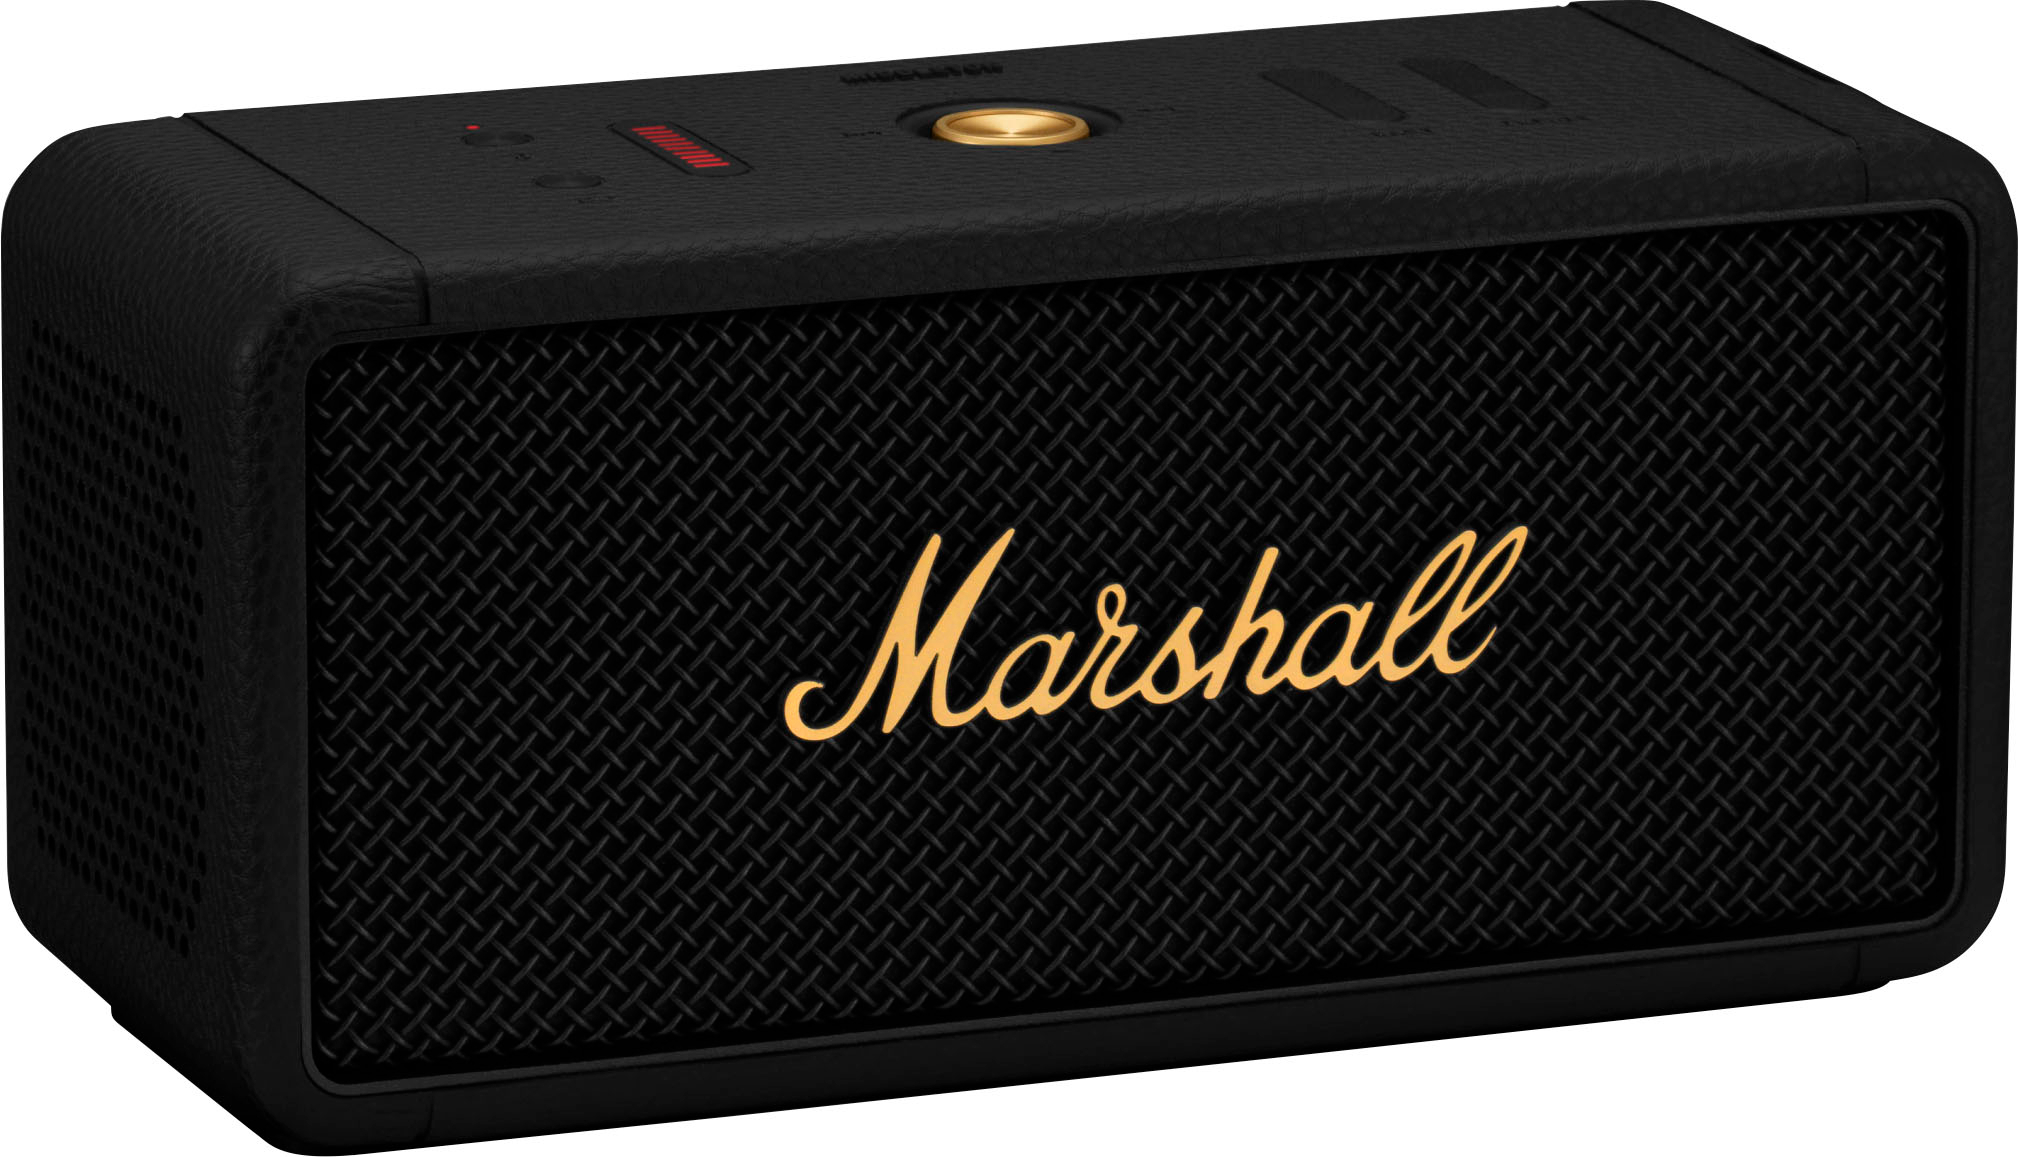 Marshall MIDDLETON BLUETOOTH PORTABLE SPEAKER Black/Brass 1006034 - Best Buy